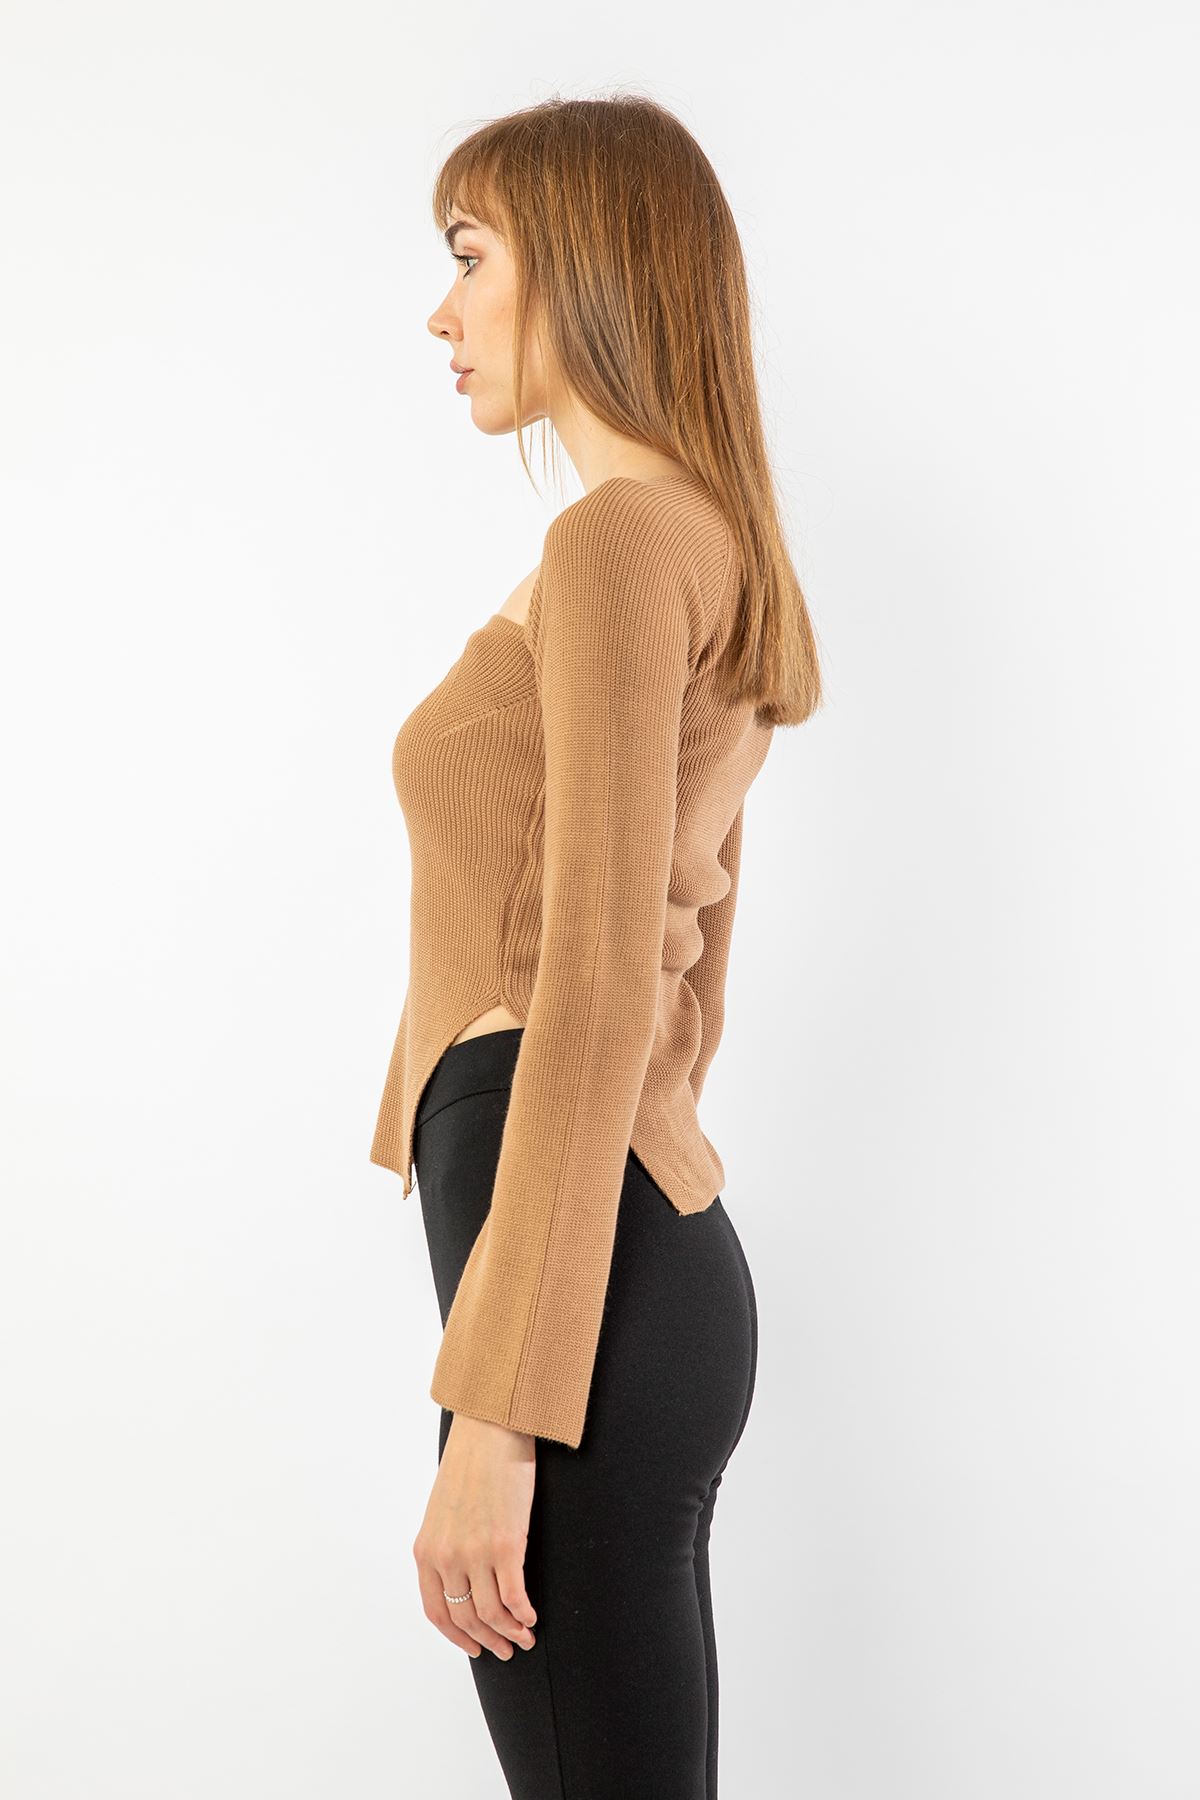 Knitwear Fabric Queen Anna Neck Short Tight Fit Asymmetric Women Sweater - Light Brown